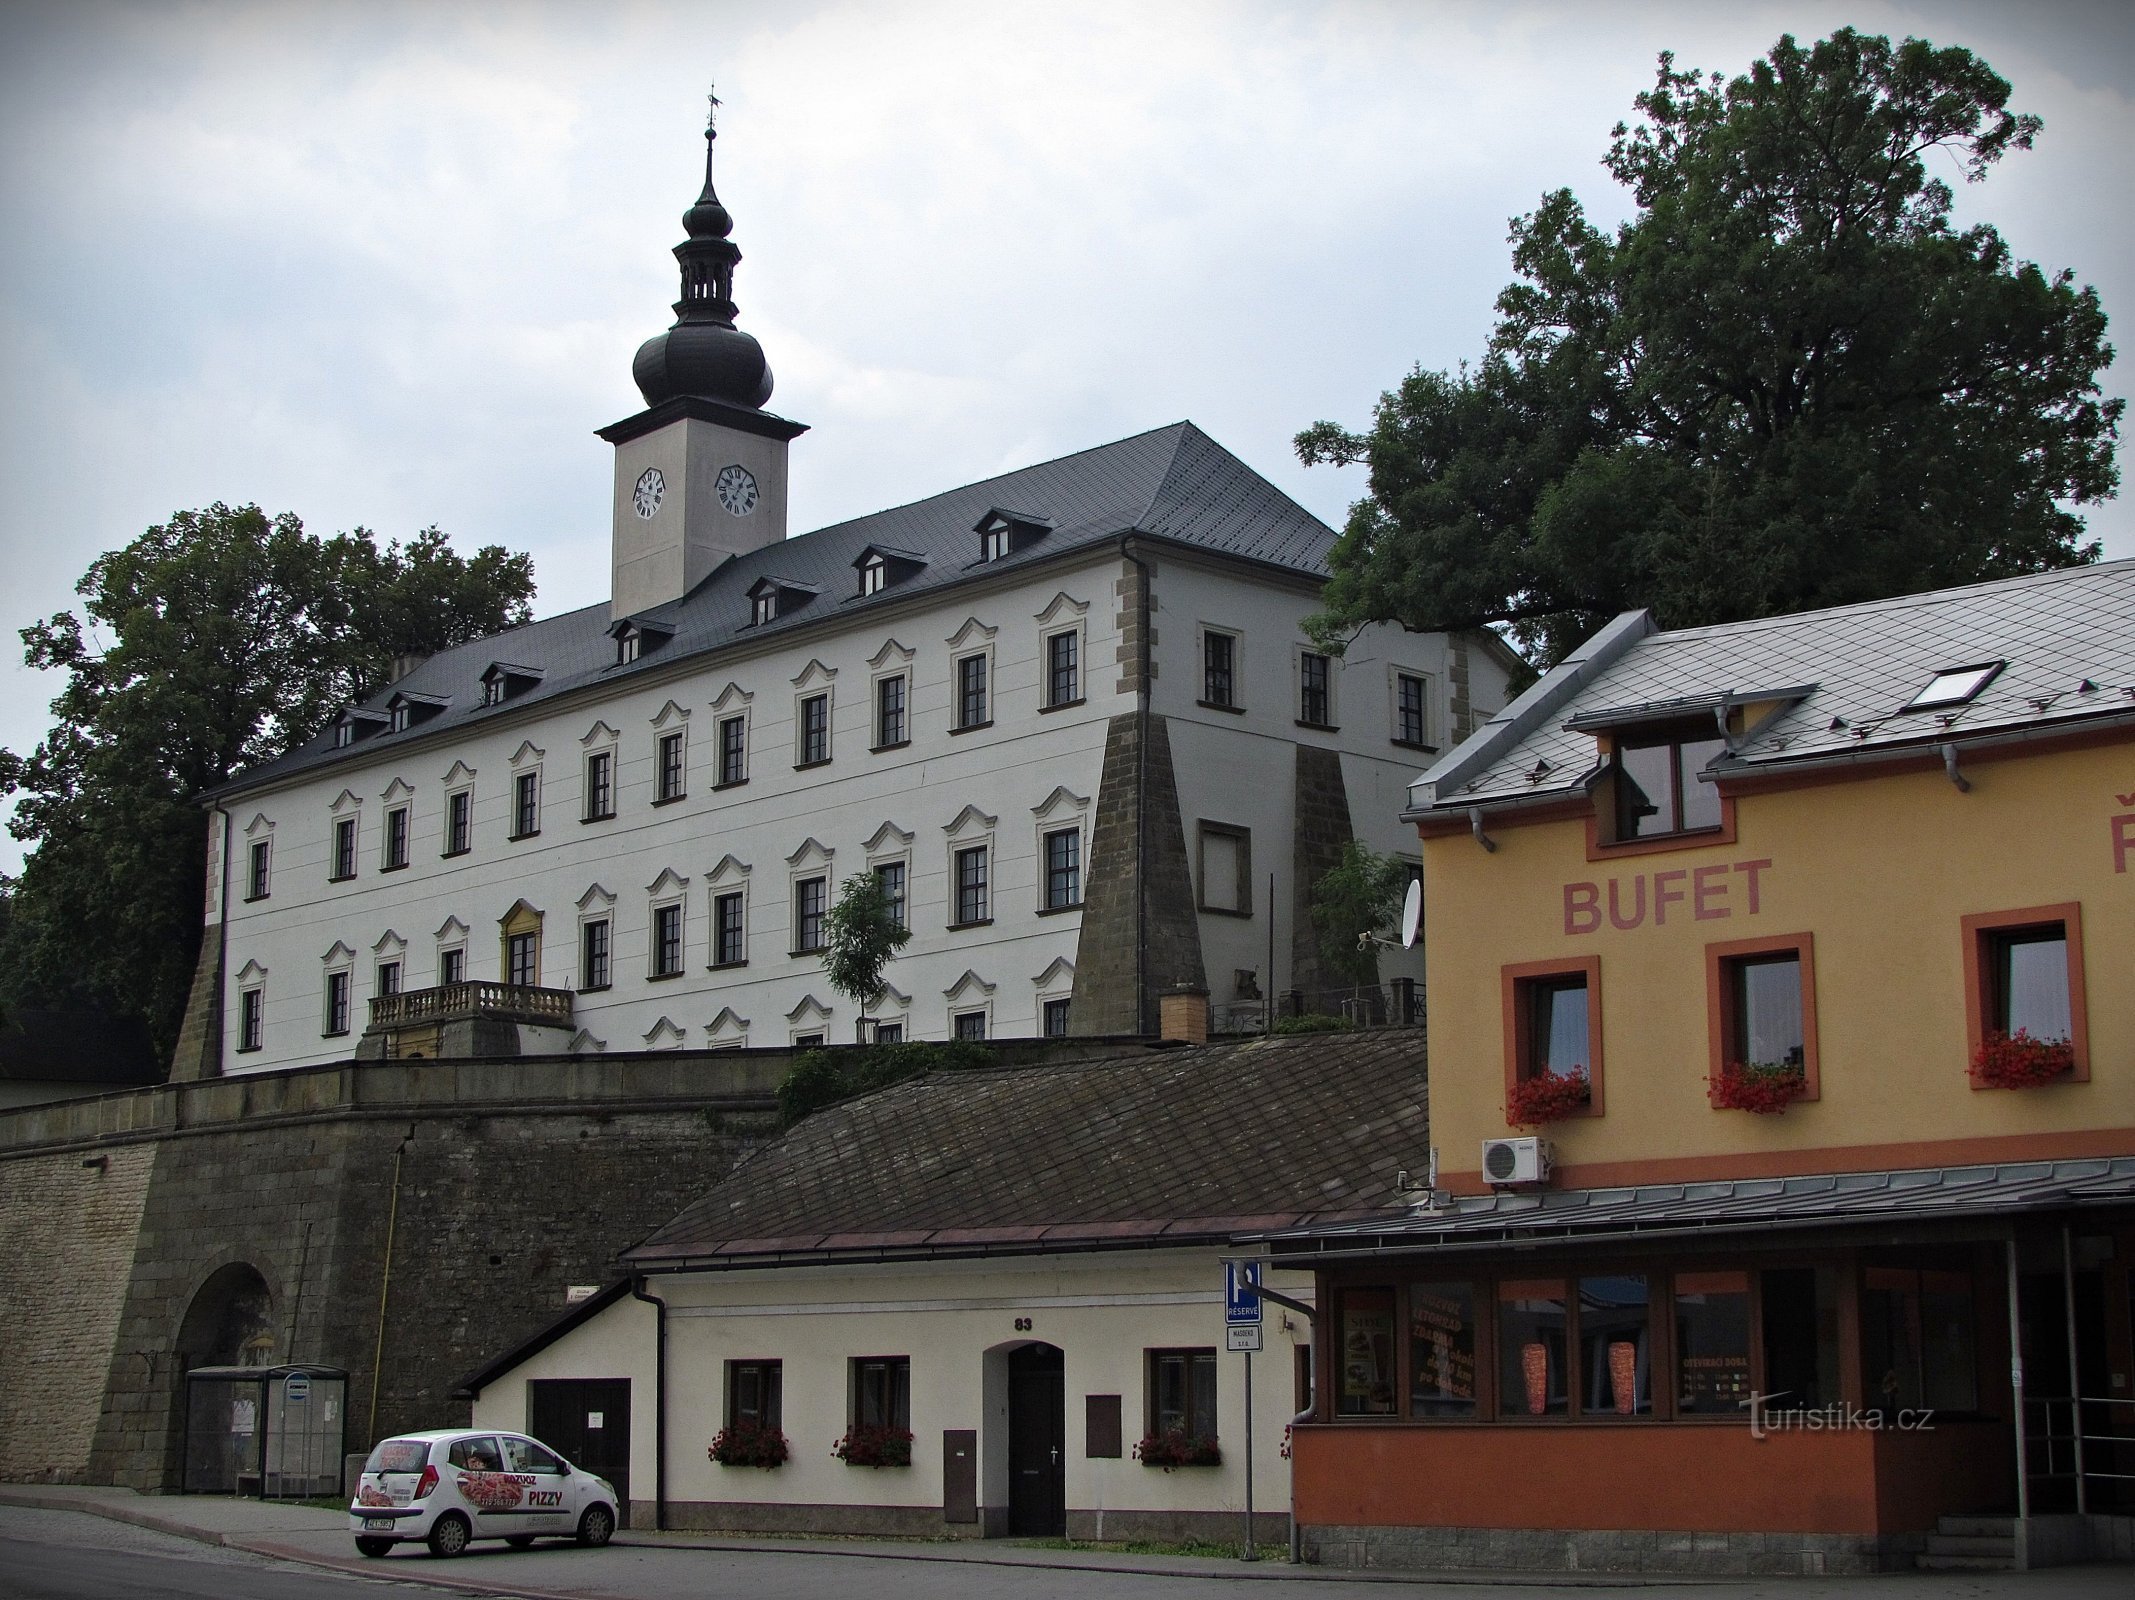 The premises of the castle in Letohrad